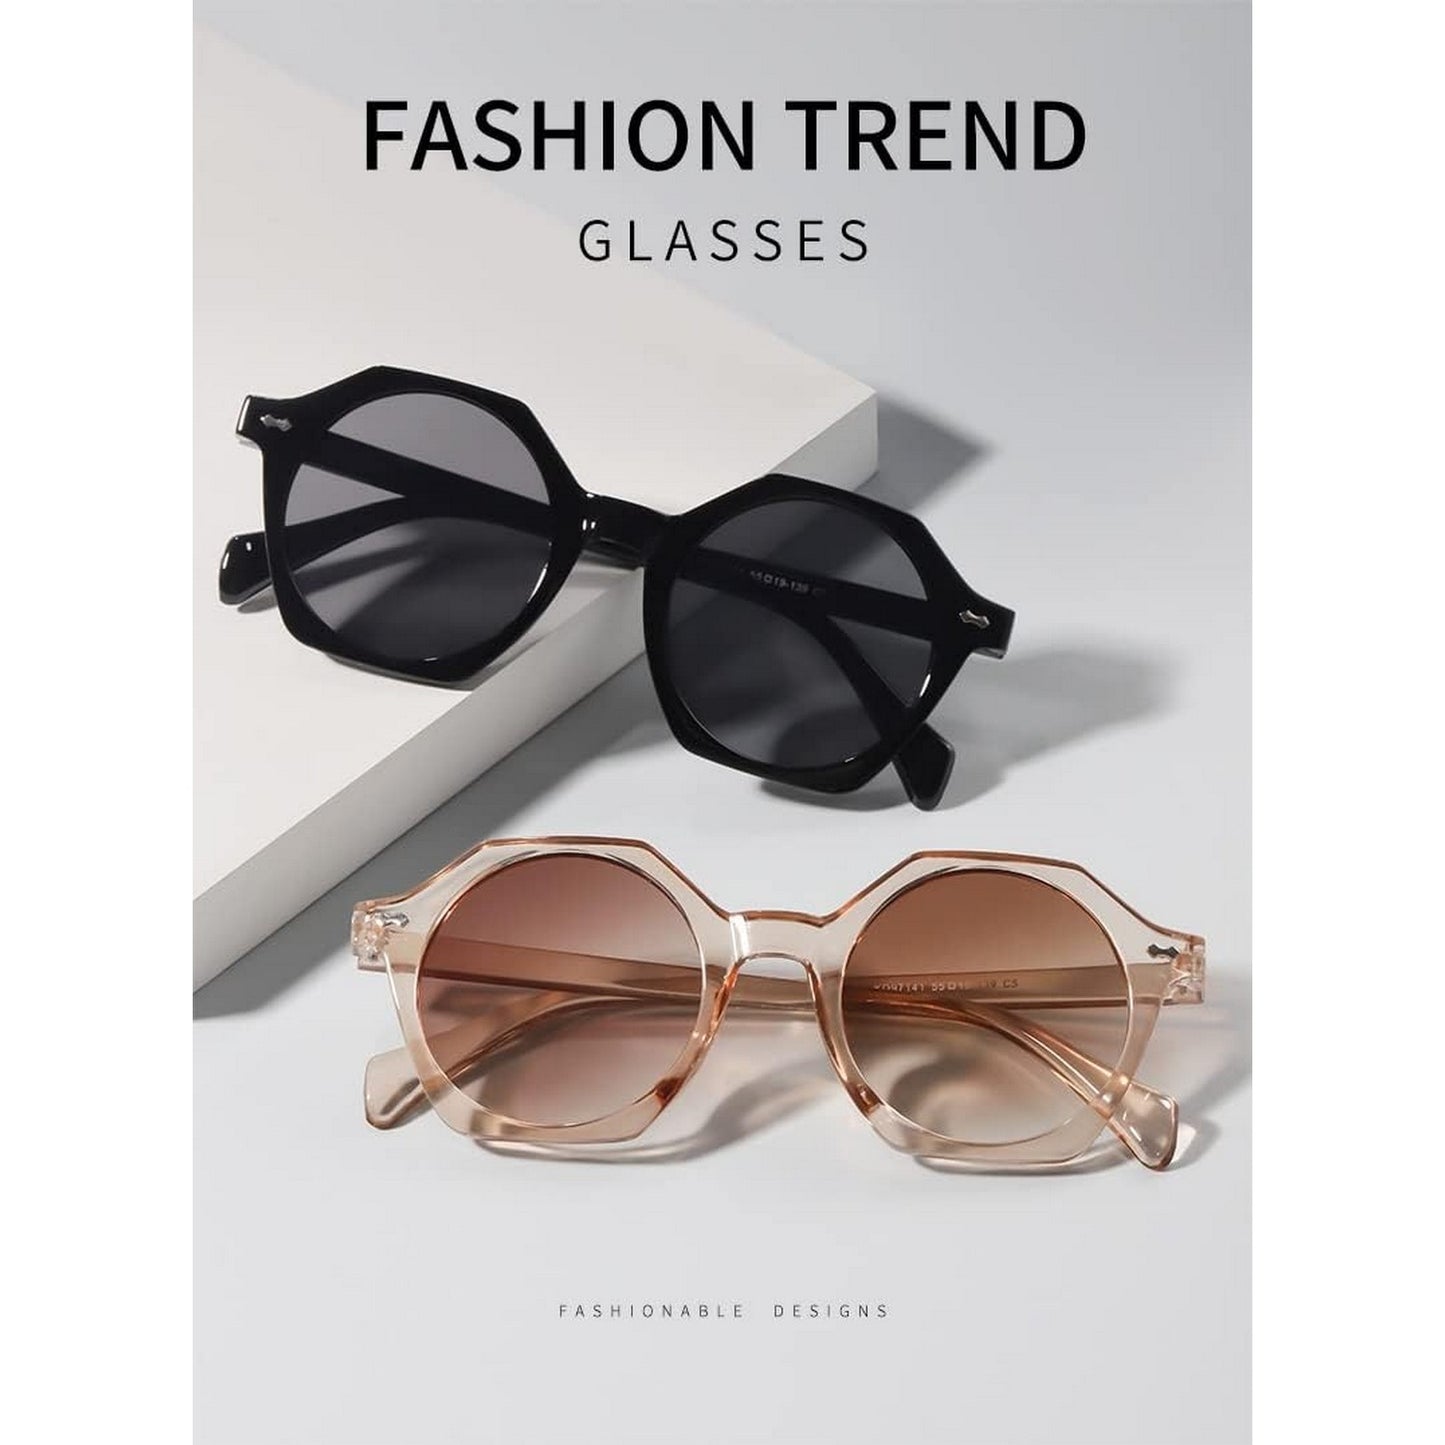 LunaShade Round Hexa Sunglasses for Men and Women Beach Glasses Black